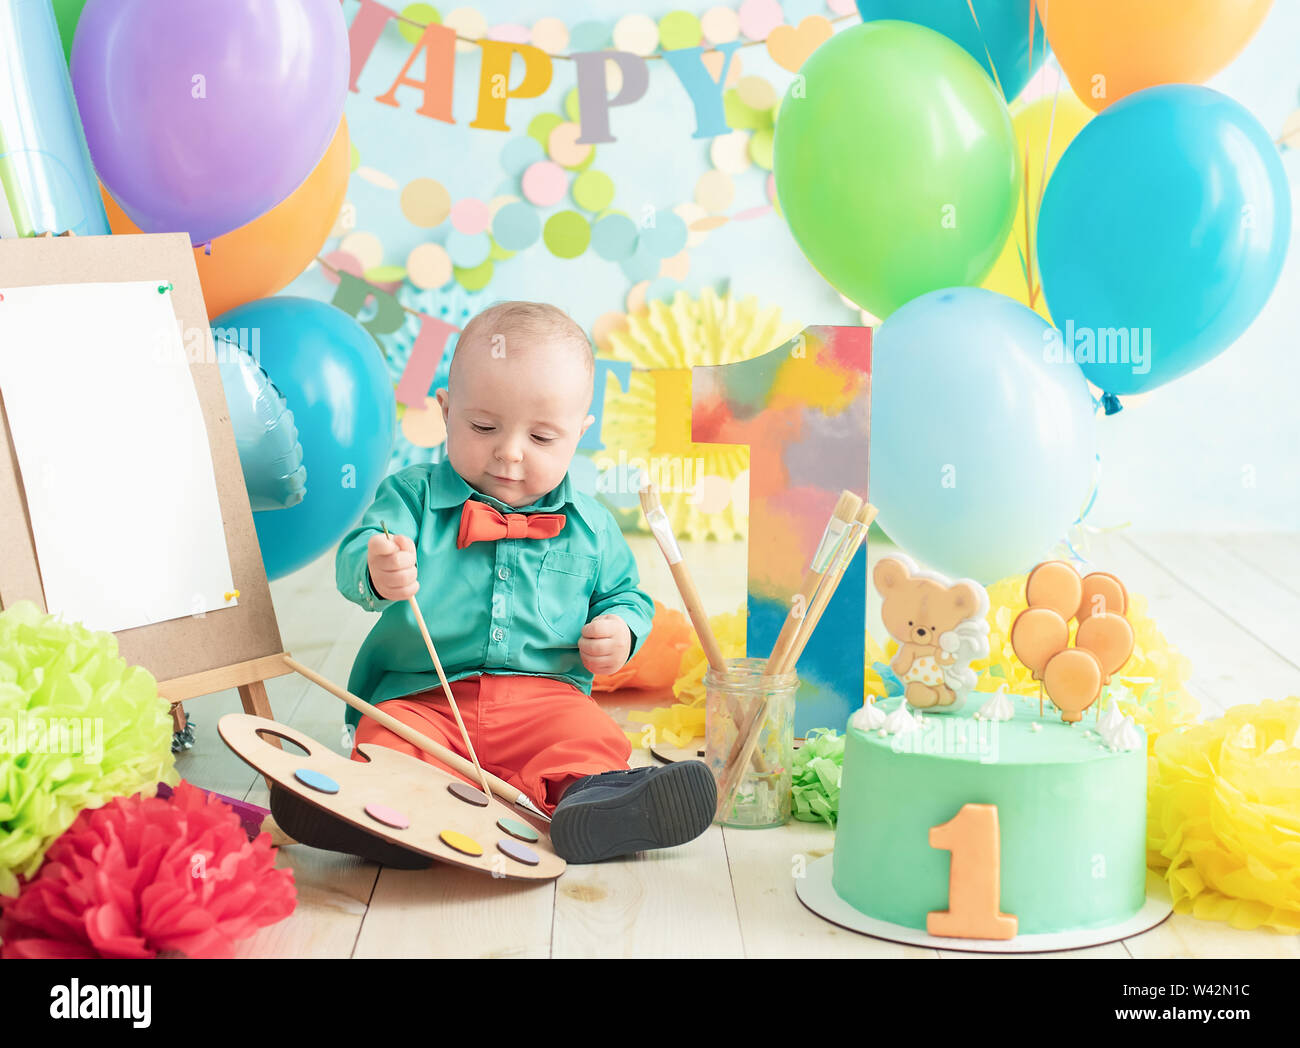 Bebé De 1 Año Celebrando El Primer Cumpleaños En La Habitación. Comiendo  Pastel. Decoración De Cumpleaños Infancia. Fotos, retratos, imágenes y  fotografía de archivo libres de derecho. Image 89709928